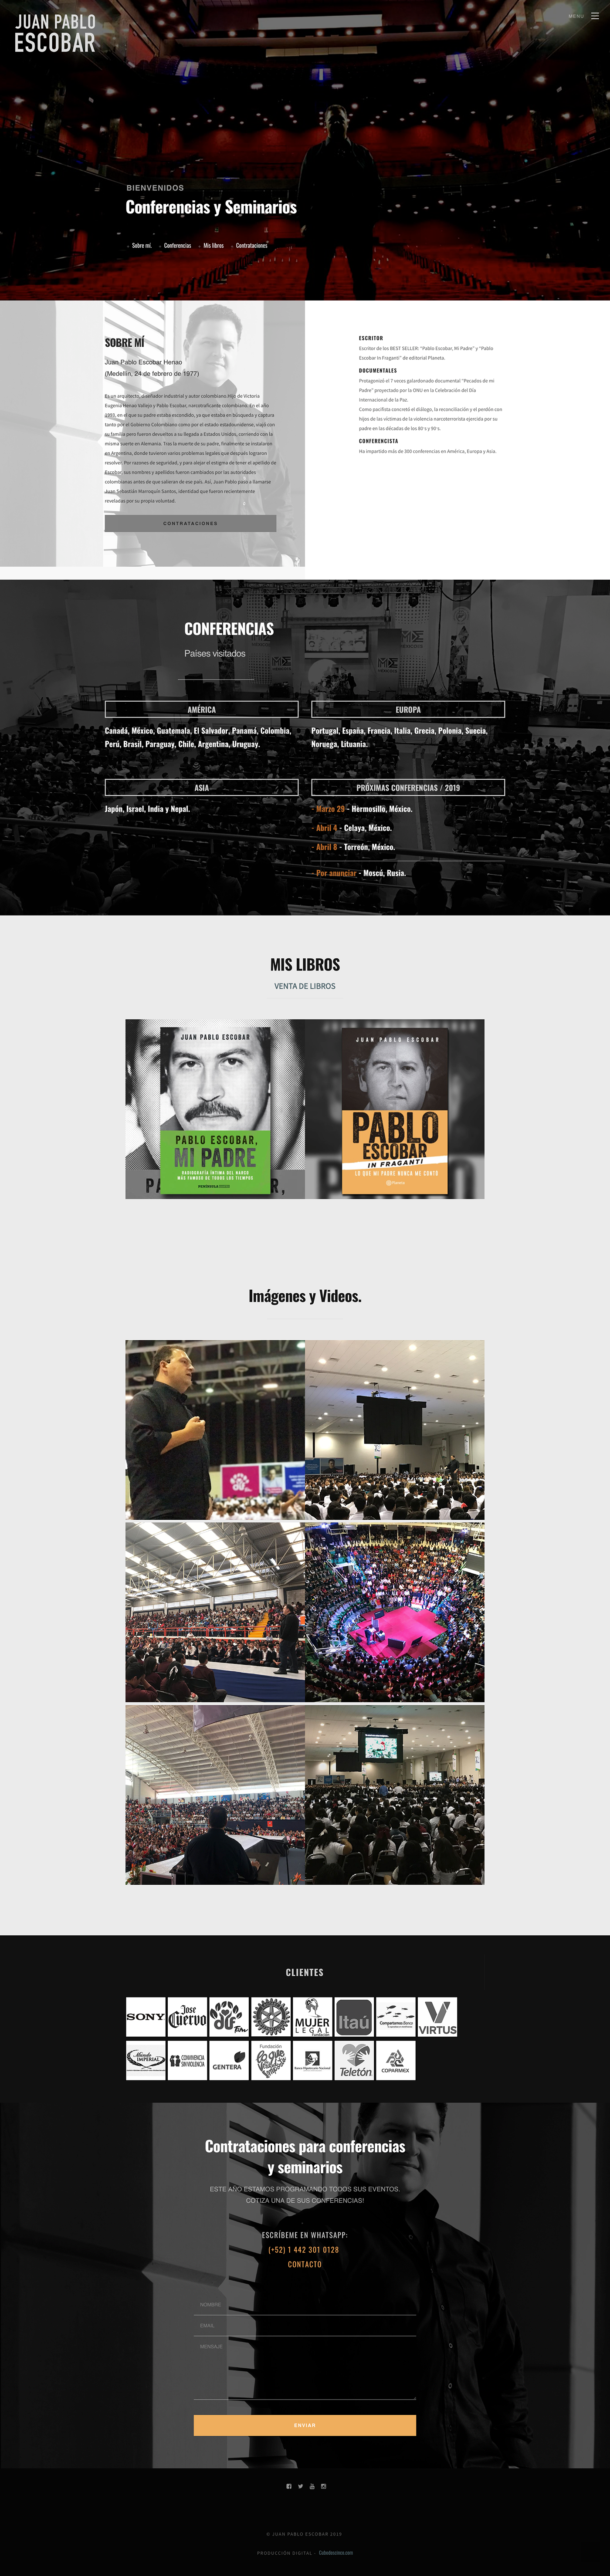 conferencias Website Juan Pablo escobar Web Design 